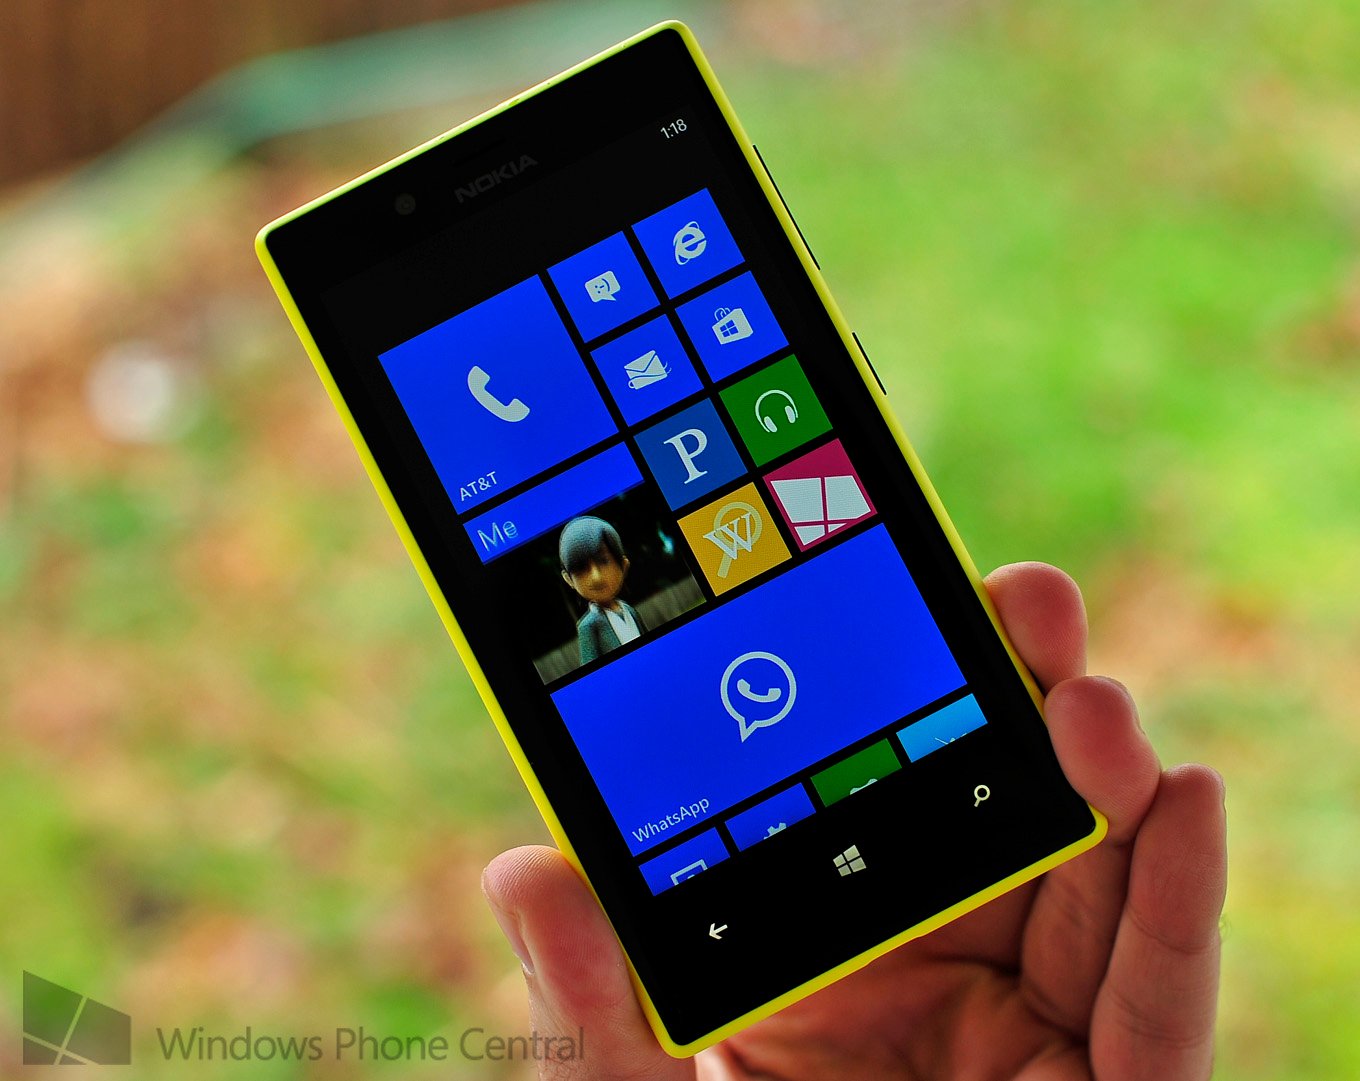 Nokia Lumia 720 Display